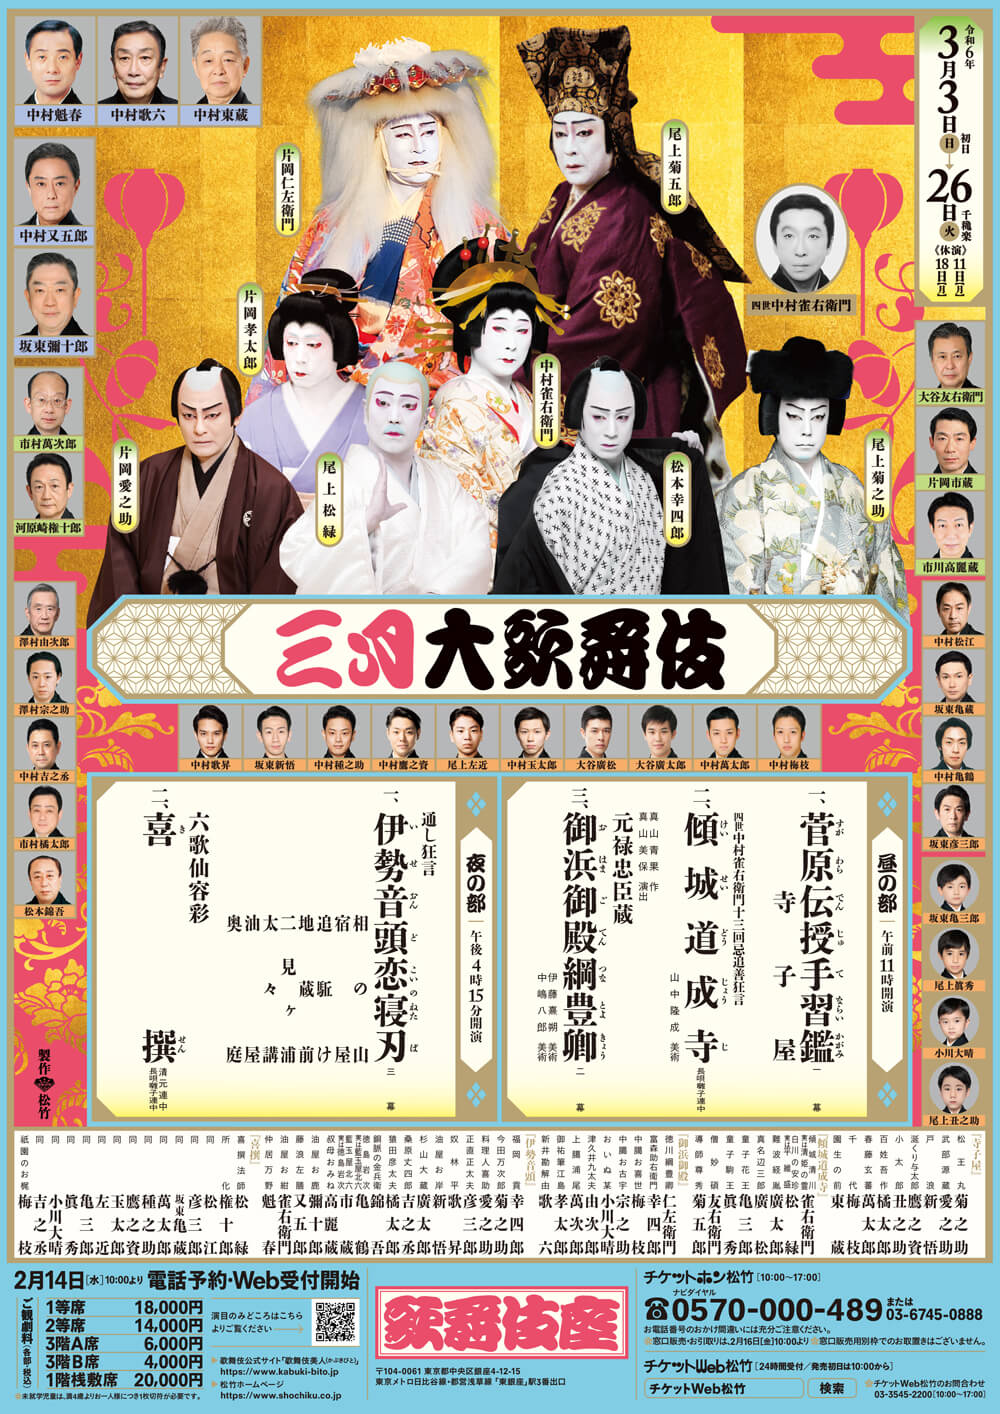 March Program at the kabukiza